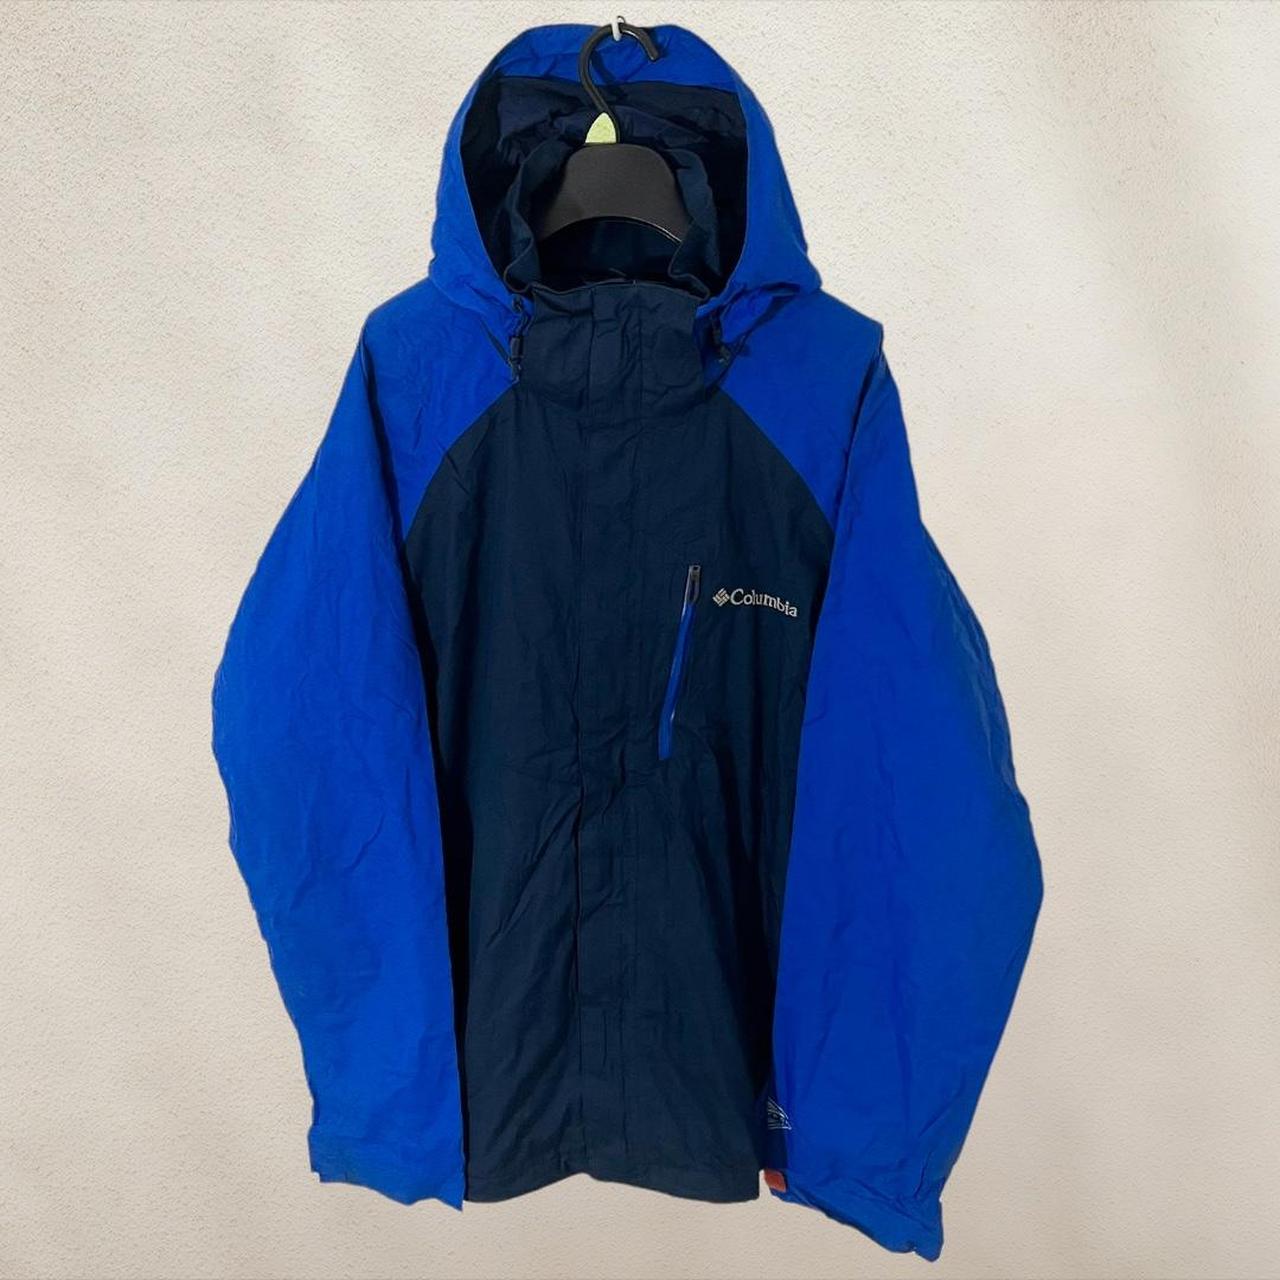 Columbia Sportswear Men's Blue Jacket | Depop